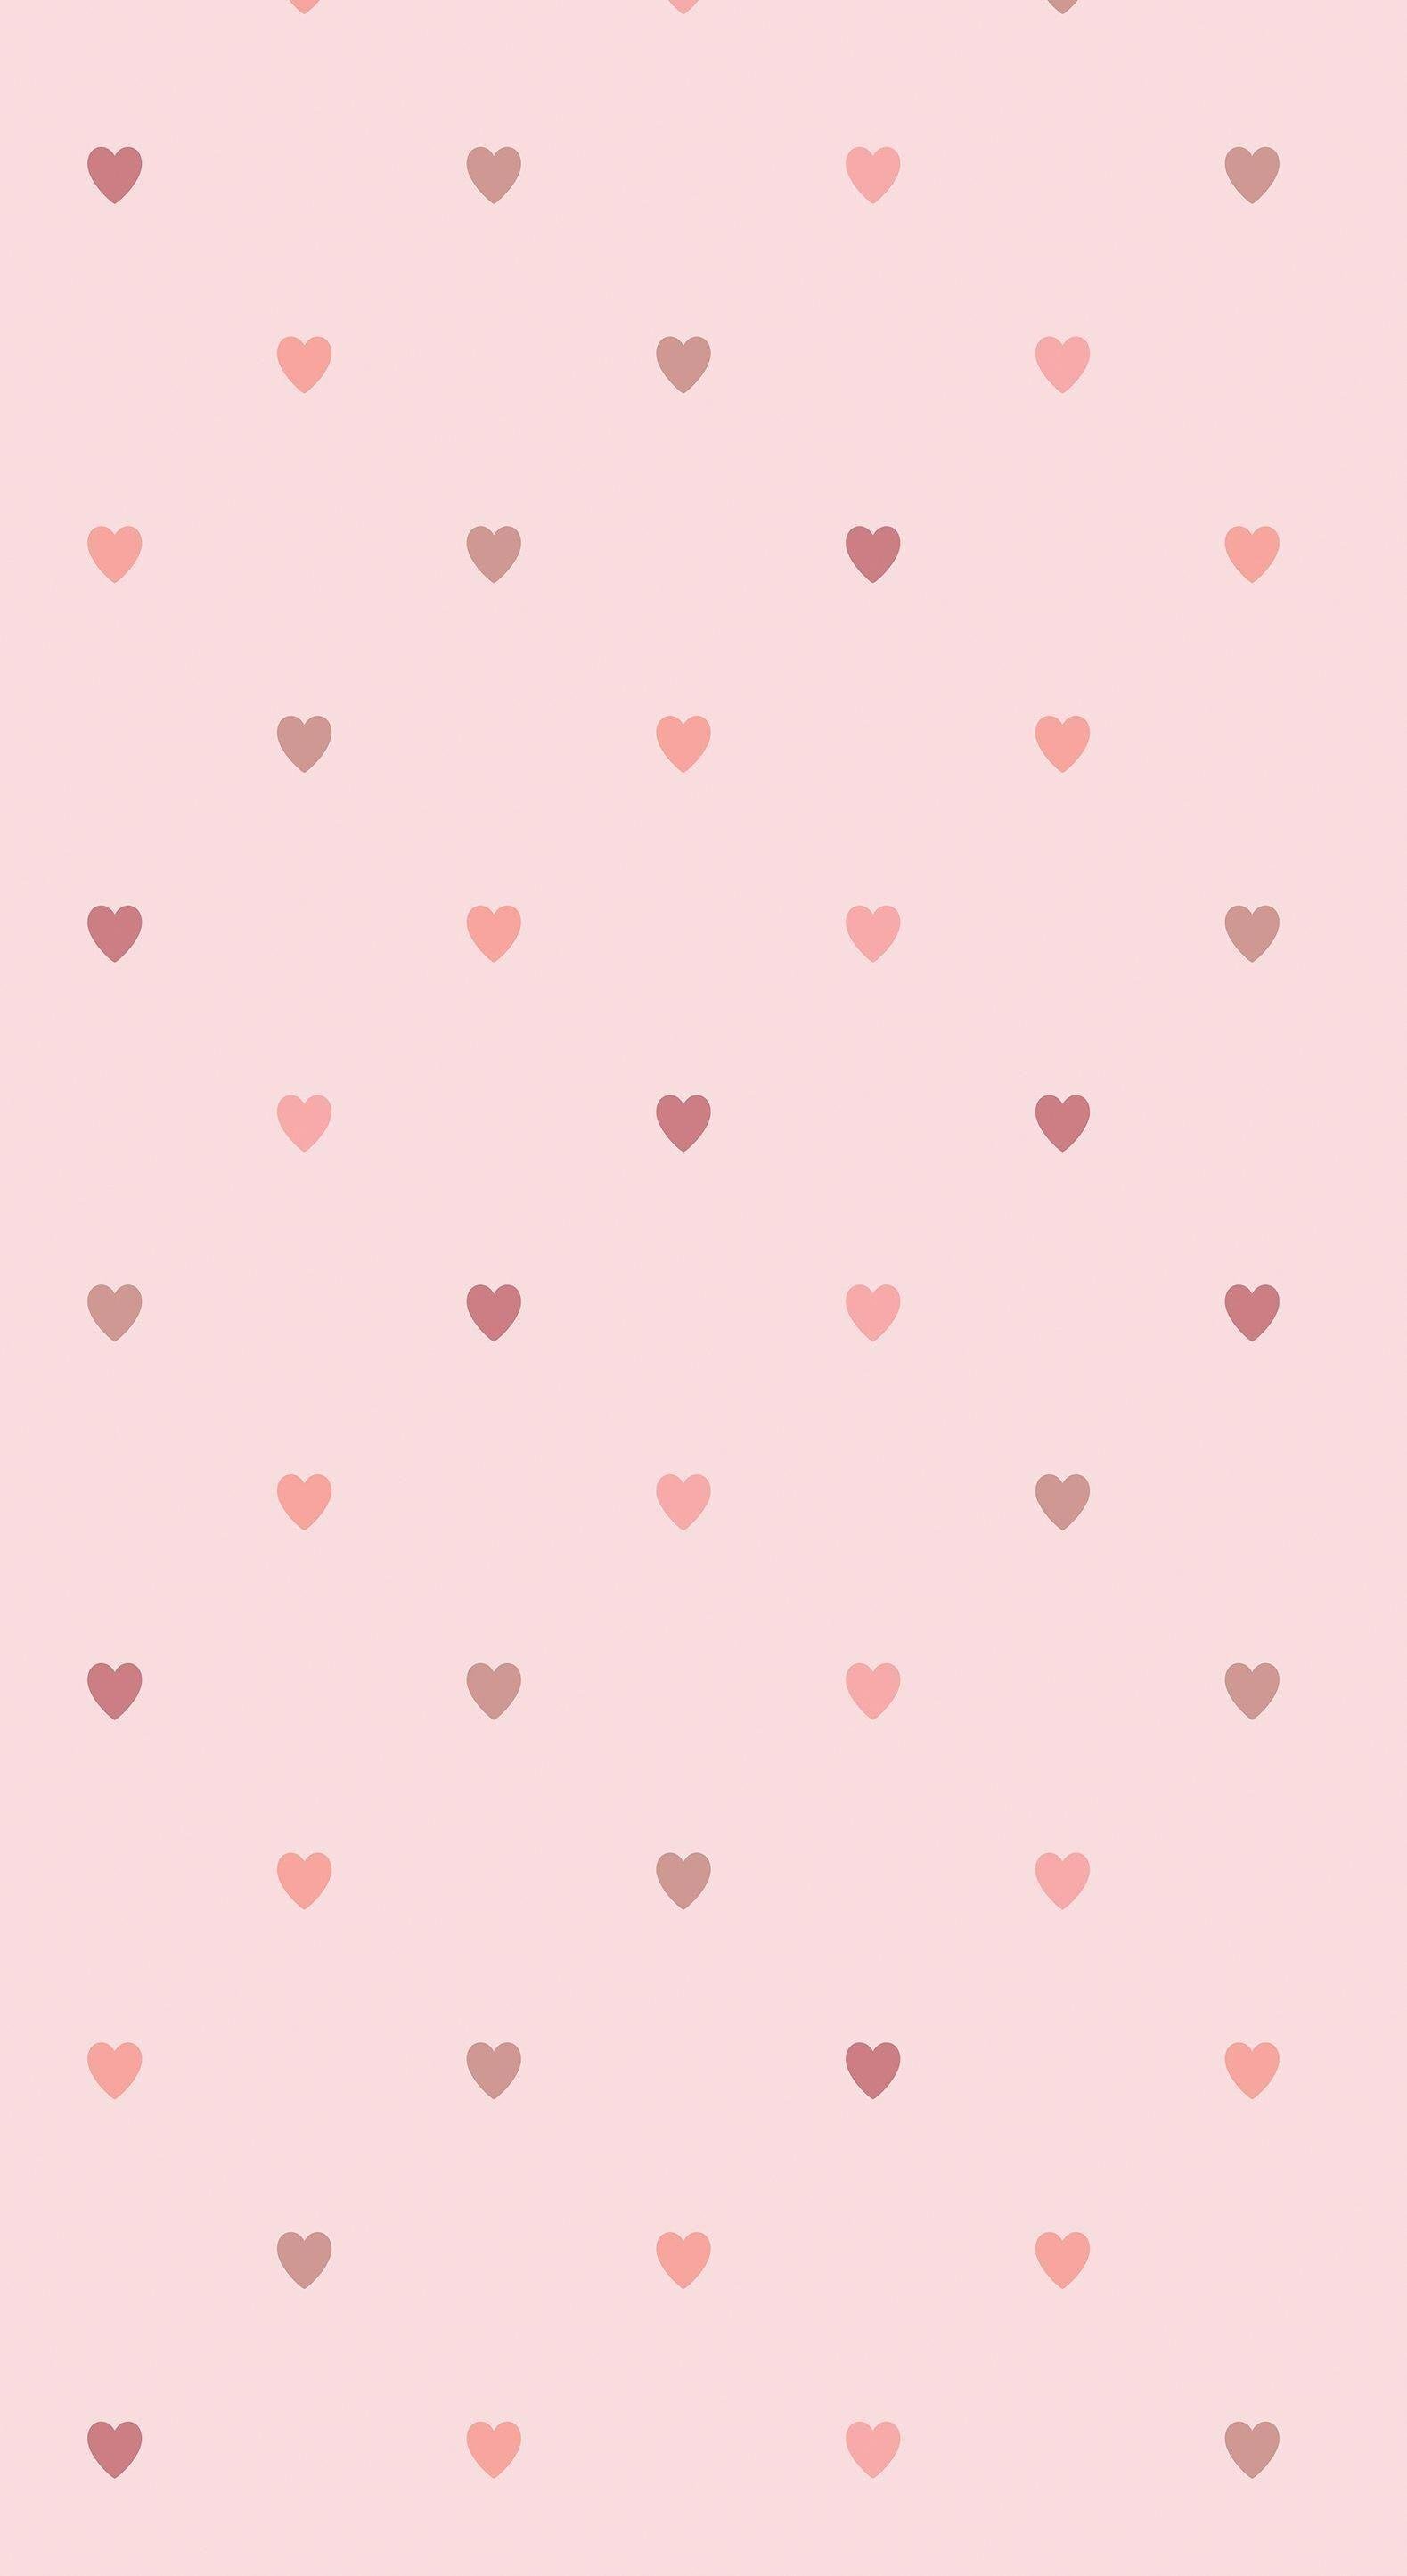 Bạn muốn tìm kiếm một hình nền thẩm mỹ với gam màu hồng sáng và trái tim đầy tình yêu? Hãy đến với hình nền hình trái tim màu hồng thẩm mỹ để tìm thấy sự hoàn hảo cho màn hình của bạn.